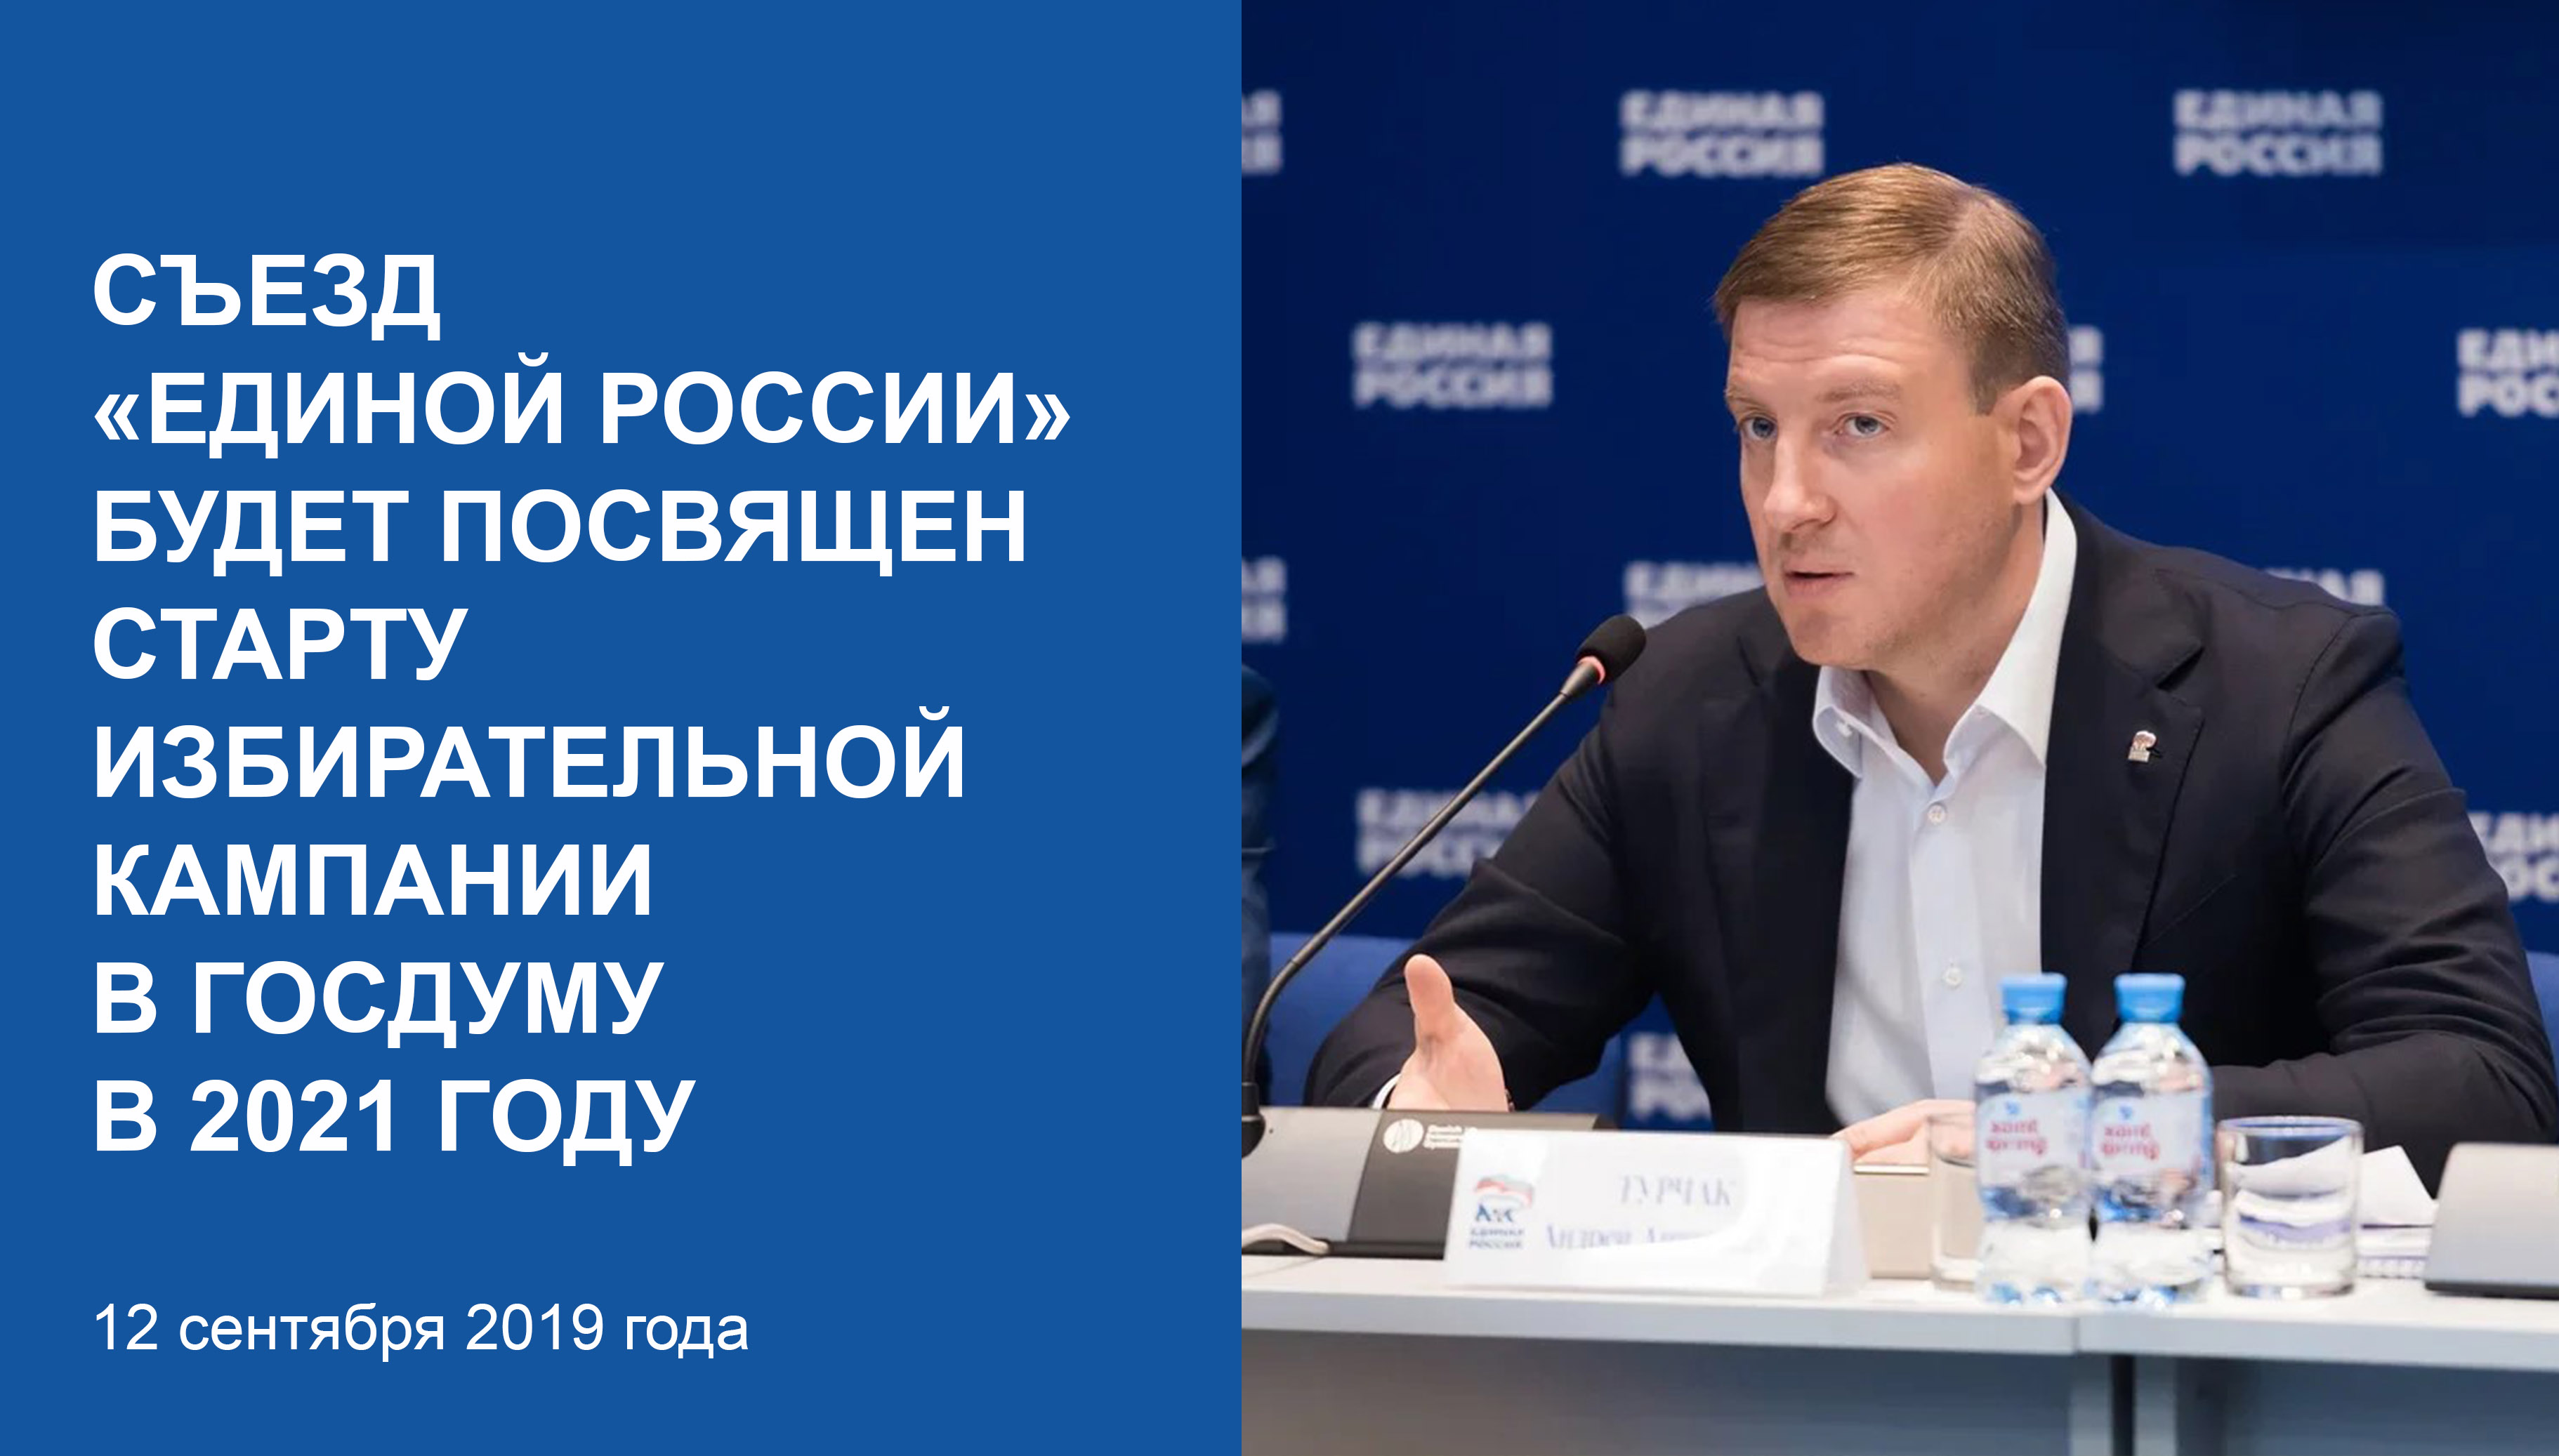 Съезд «Единой России» будетпосвящен старту избирательнойкампании в Госдуму в 2021 году